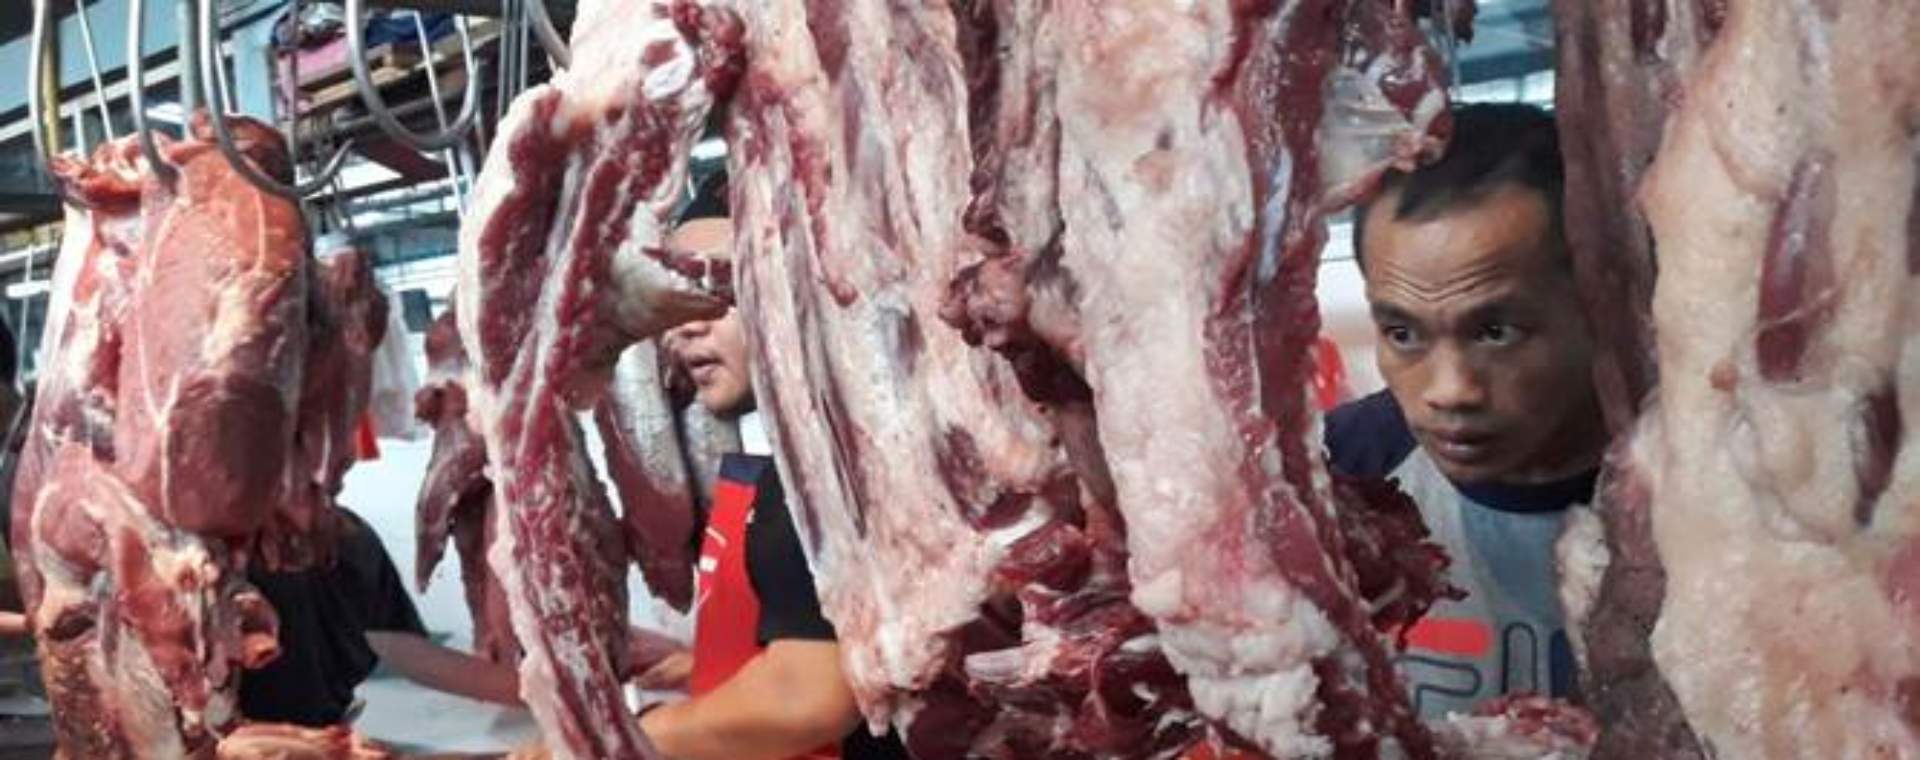 Pedagang daging sapi segar melayani konsumen, di Pasar Modern, Serpong, Tangerang Selatan, Senin (2/6/2019). - Bisnis/Endang Muchtar